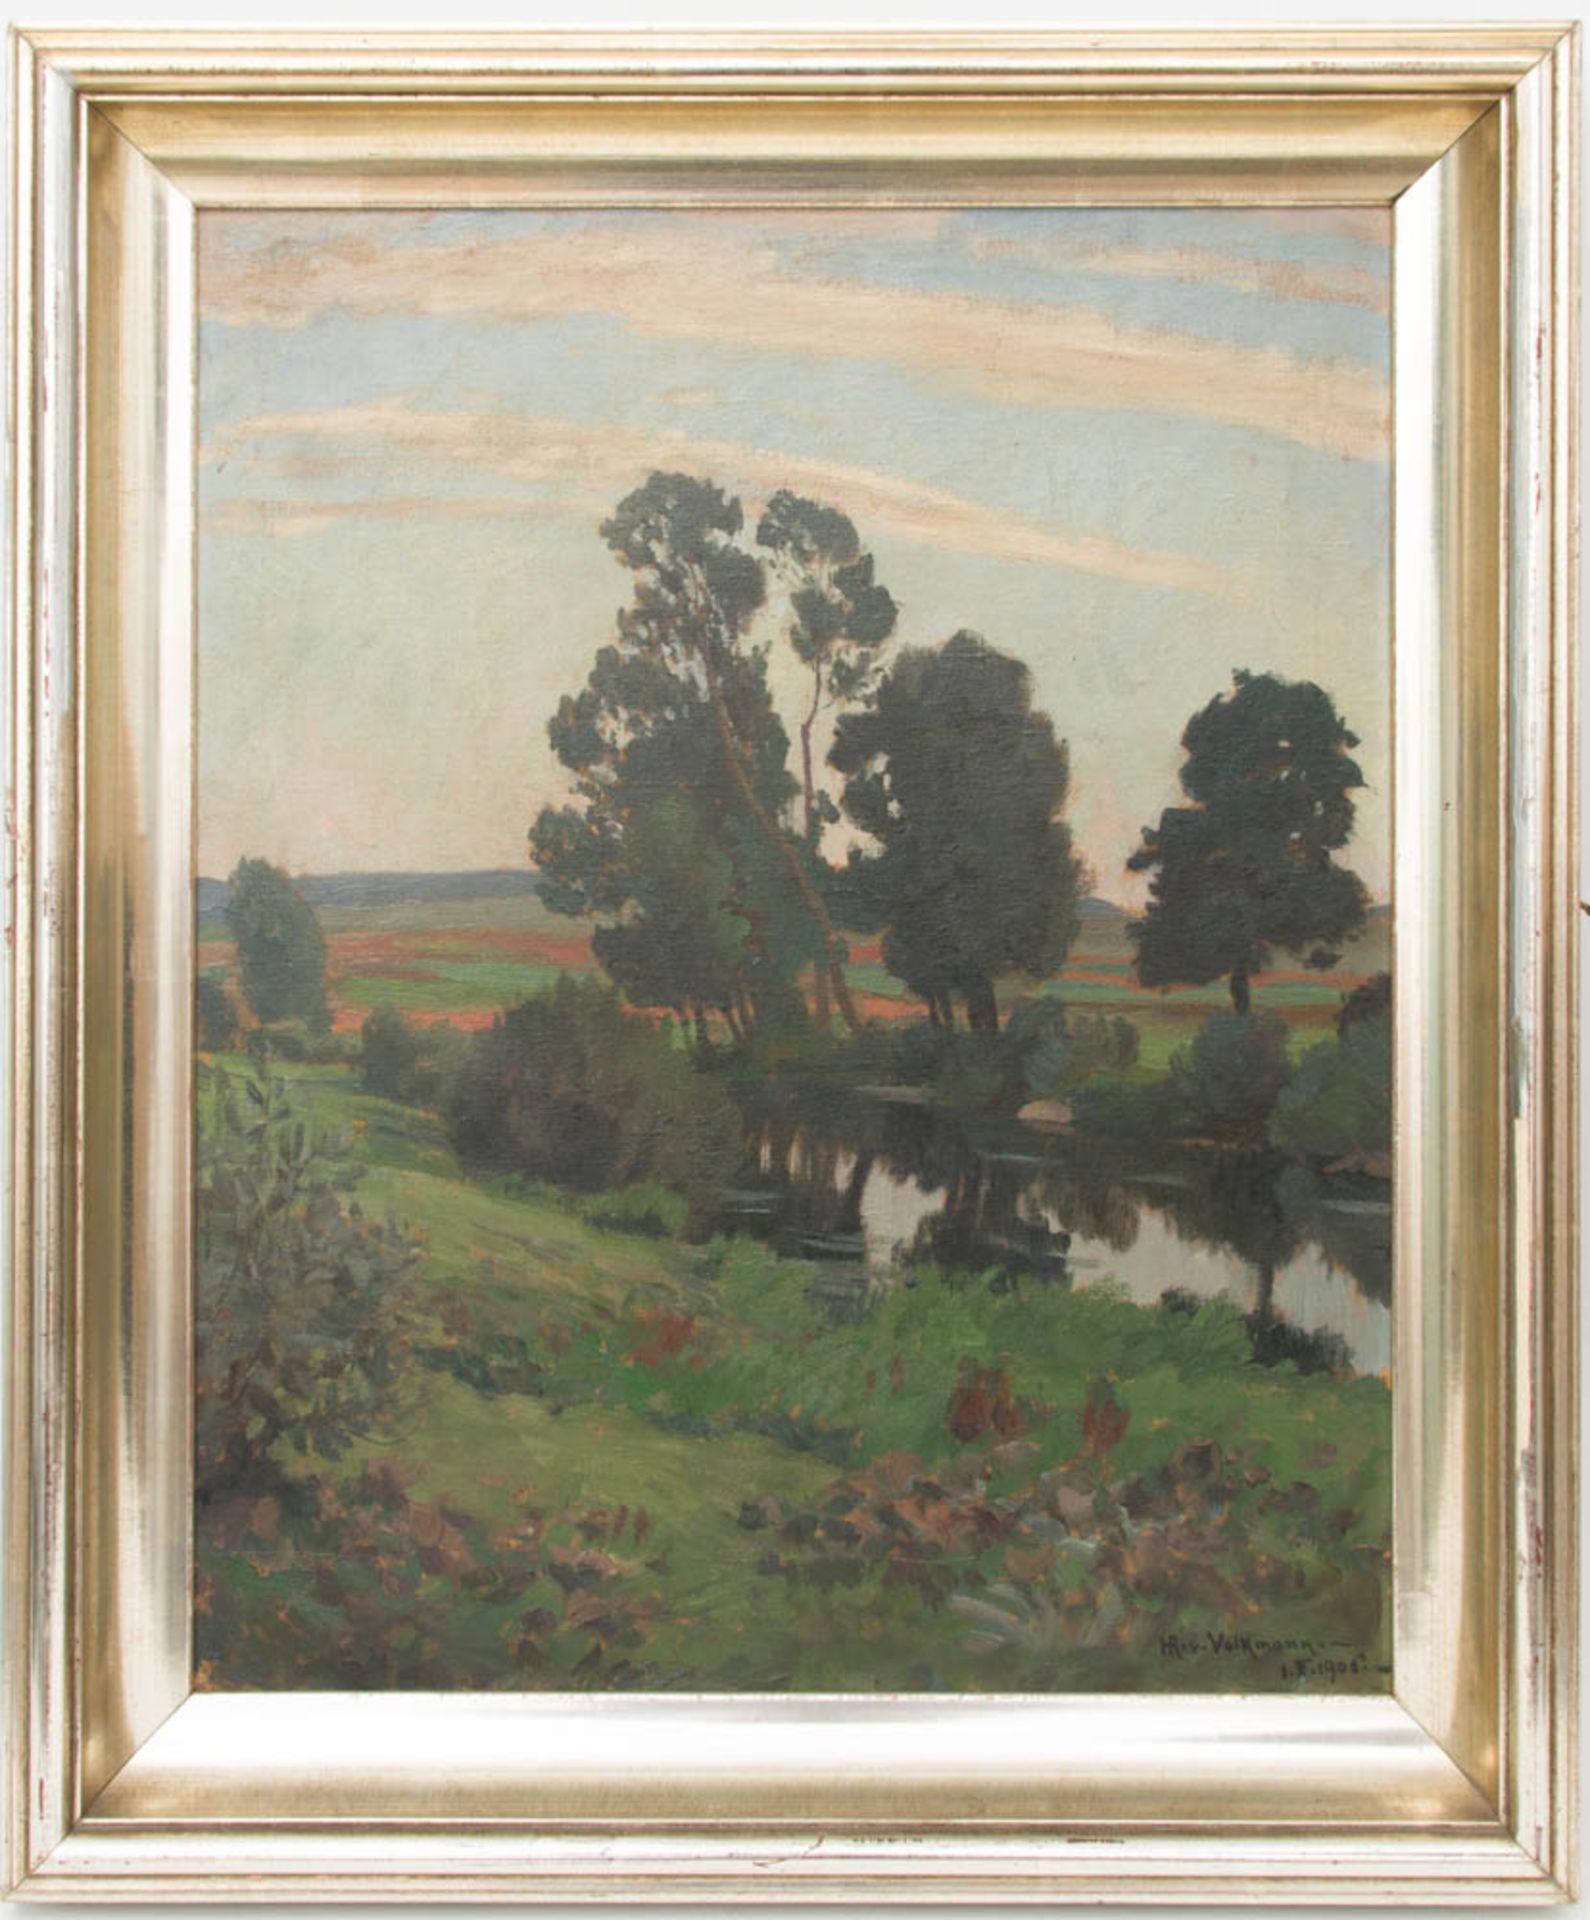 Hans Richard von Volkmann, Landschaftsstudie, Öl auf Leinwand, 1906.Hans Richard von Volkmann (